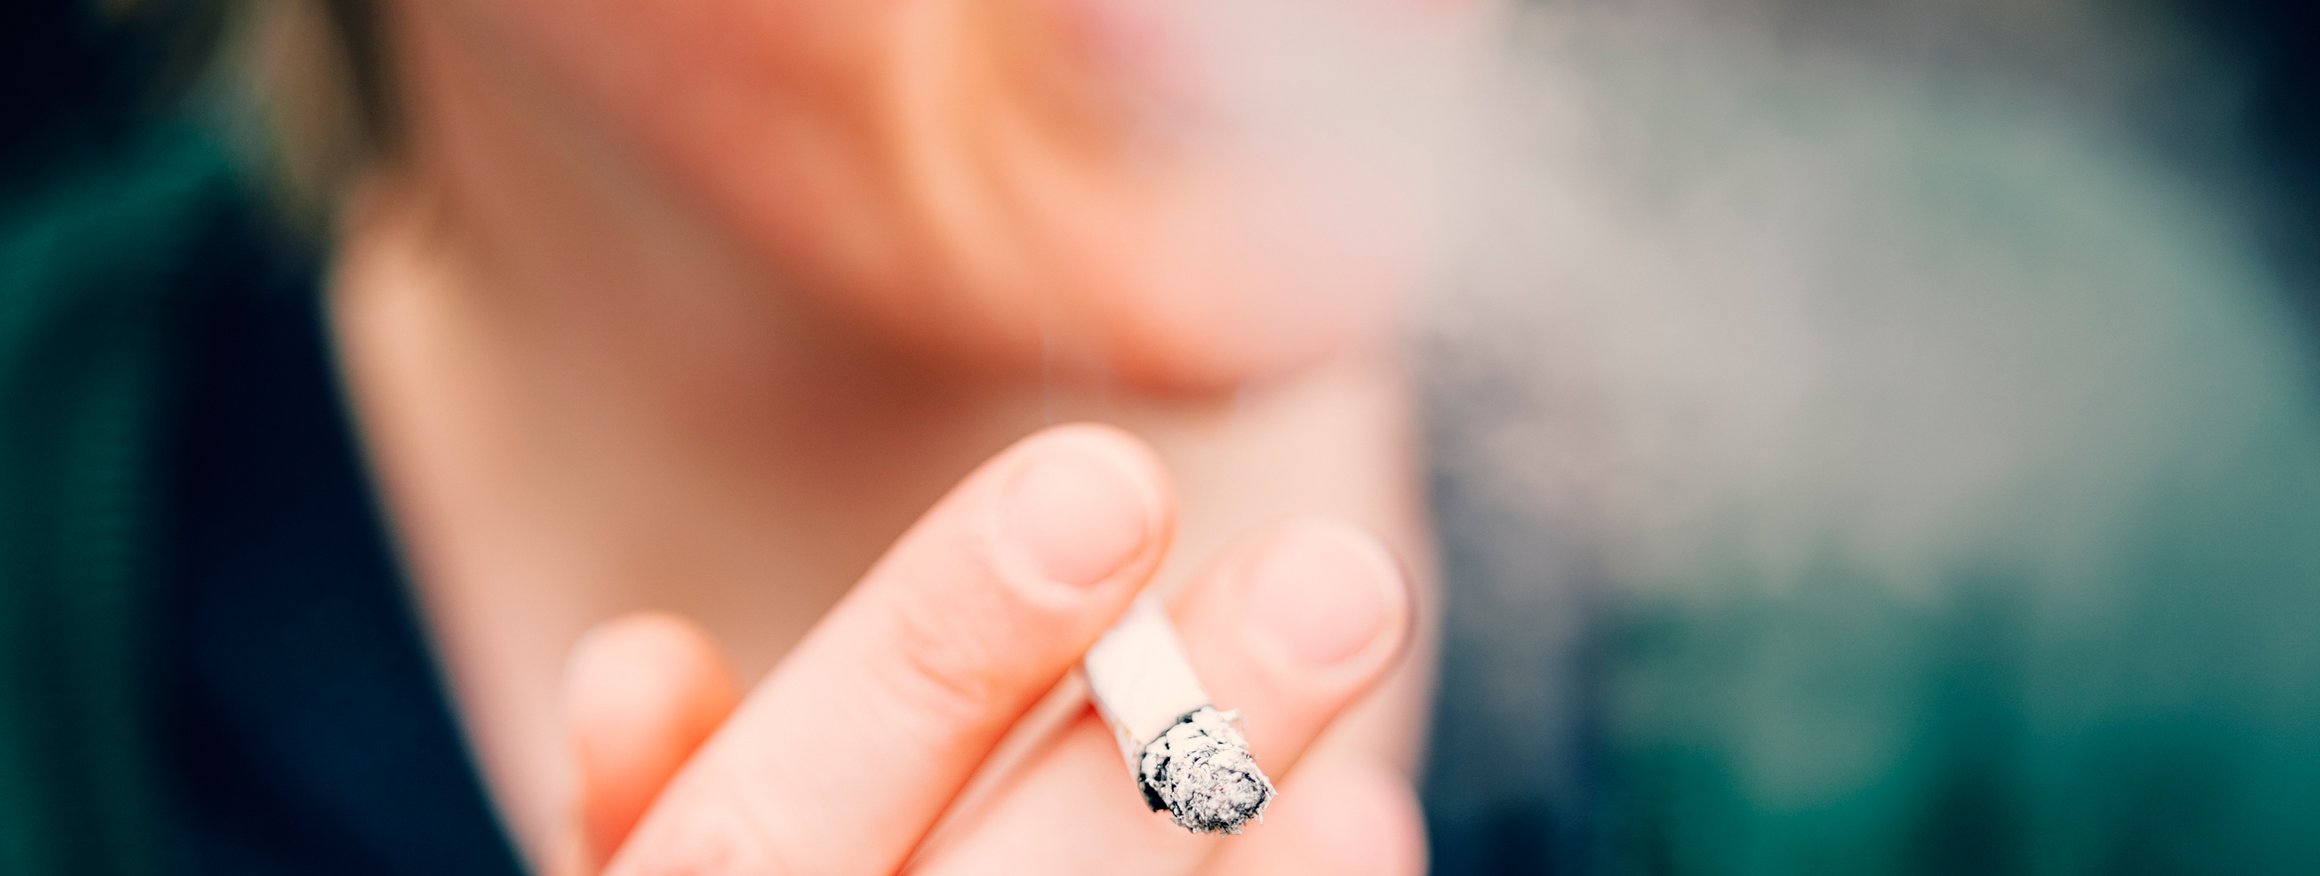 Ein Mann hält eine Zigarette in der Hand und bläst den Rauch heraus